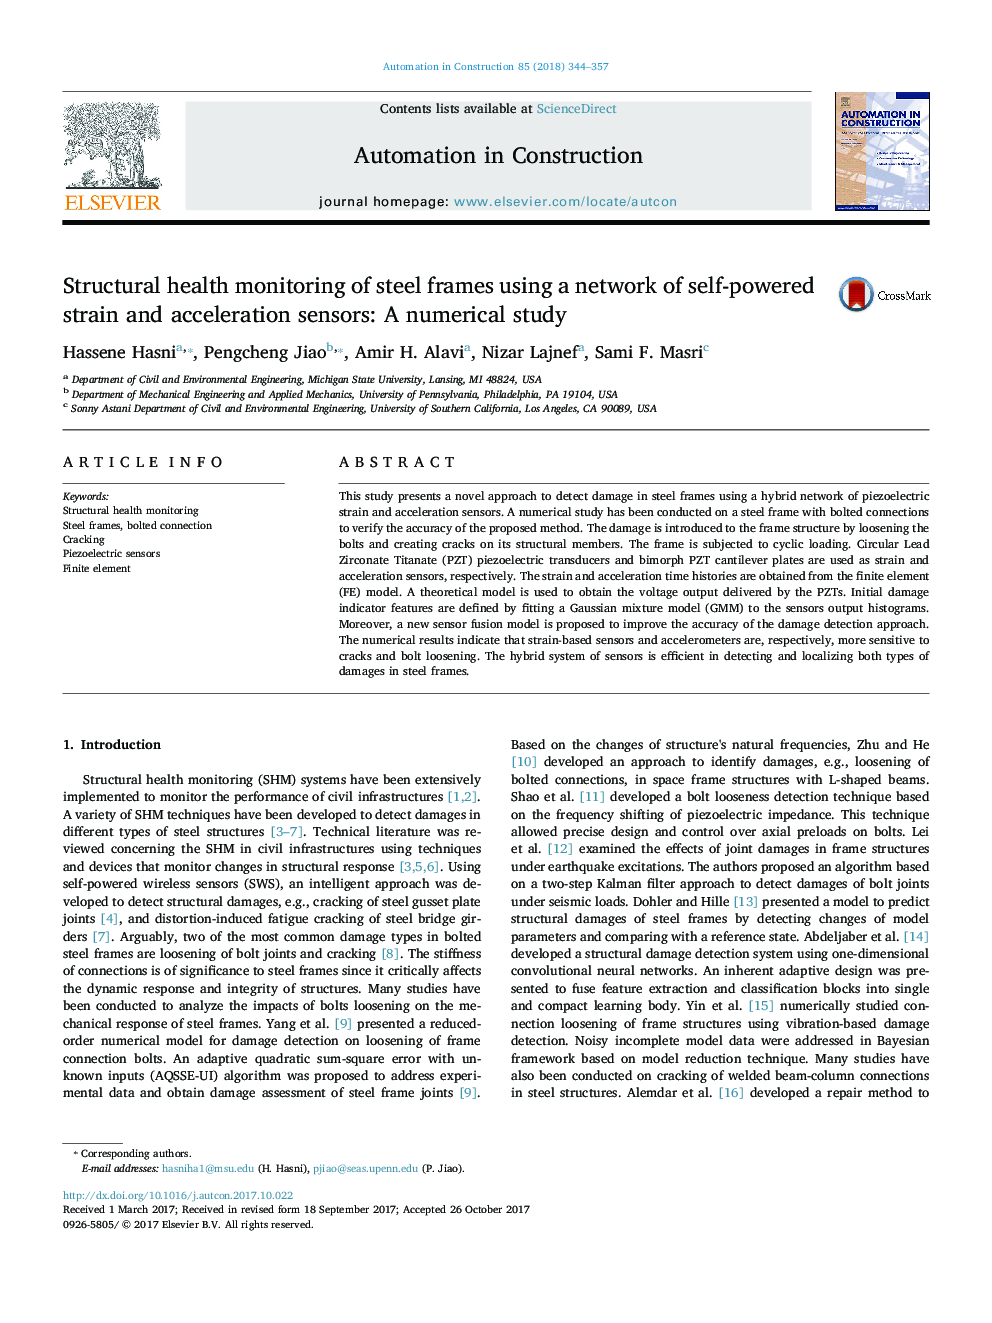 نظارت بر سلامت سازه های فریم های فولادی با استفاده از شبکه ای از فشار و سنسورهای شتاب خودآموز: یک مطالعه عددی 